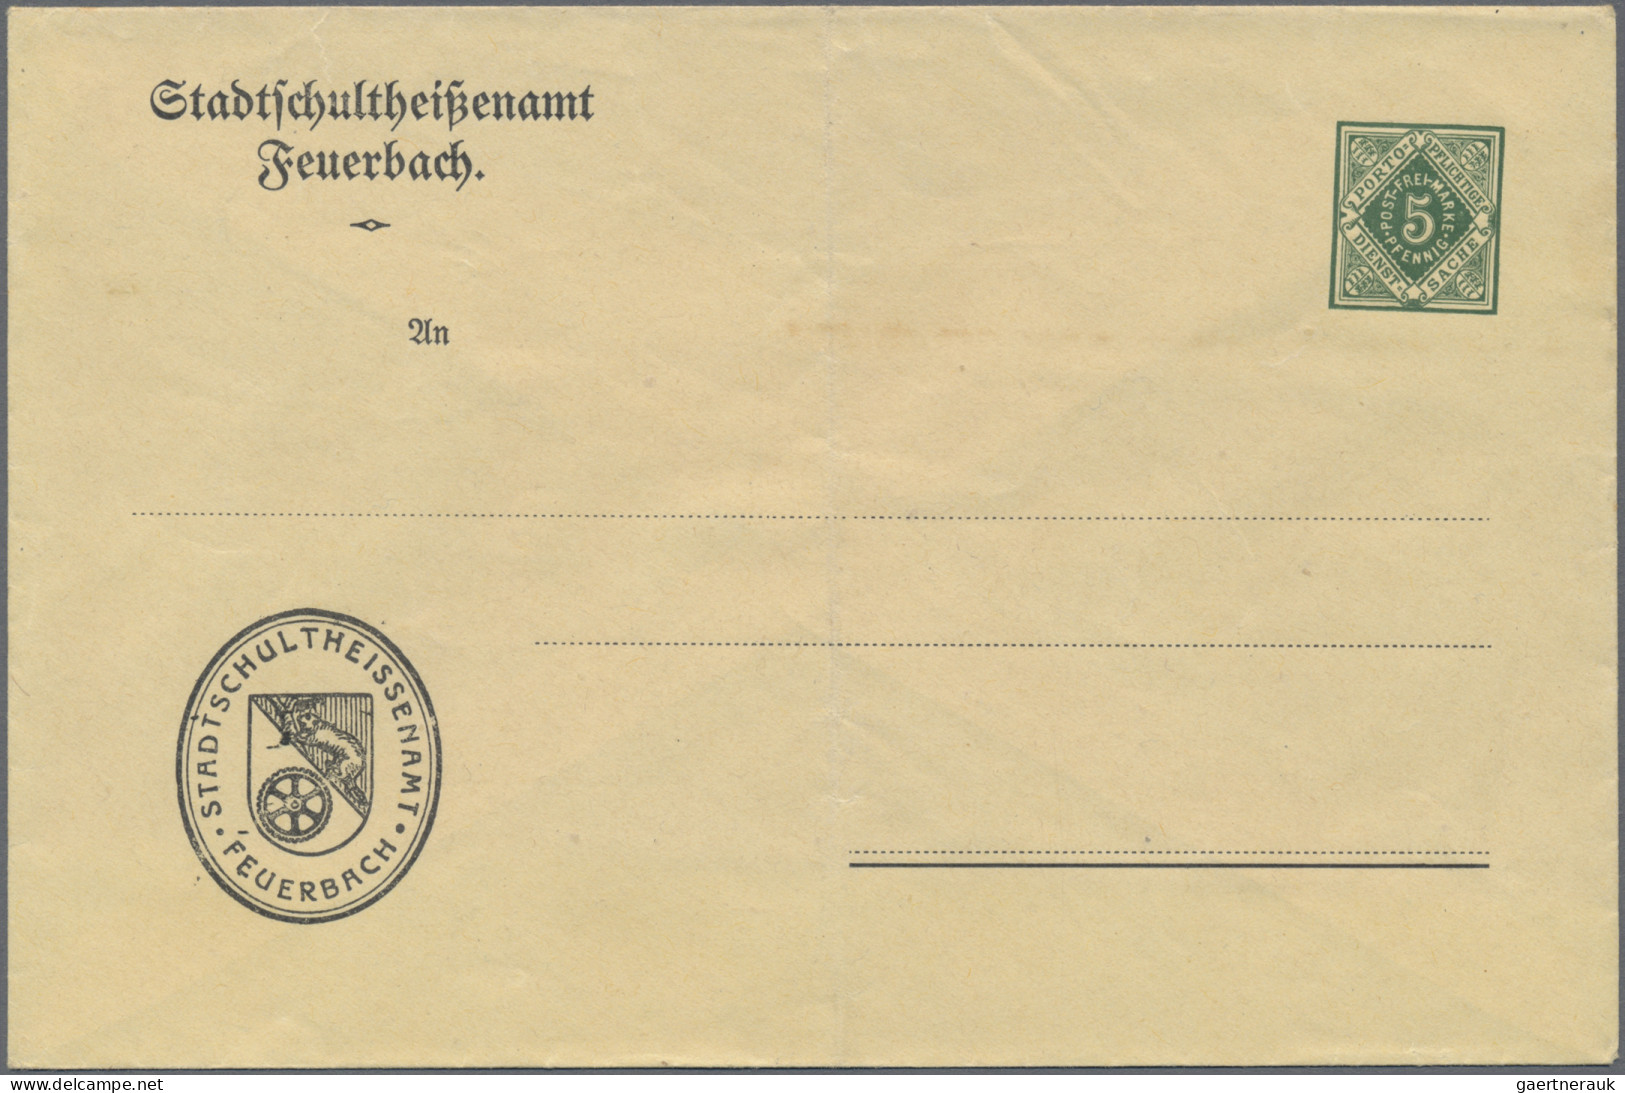 Württemberg - Ganzsachen: 1866/1920 (ca.), Partie von über 300 gebrauchten/ungeb